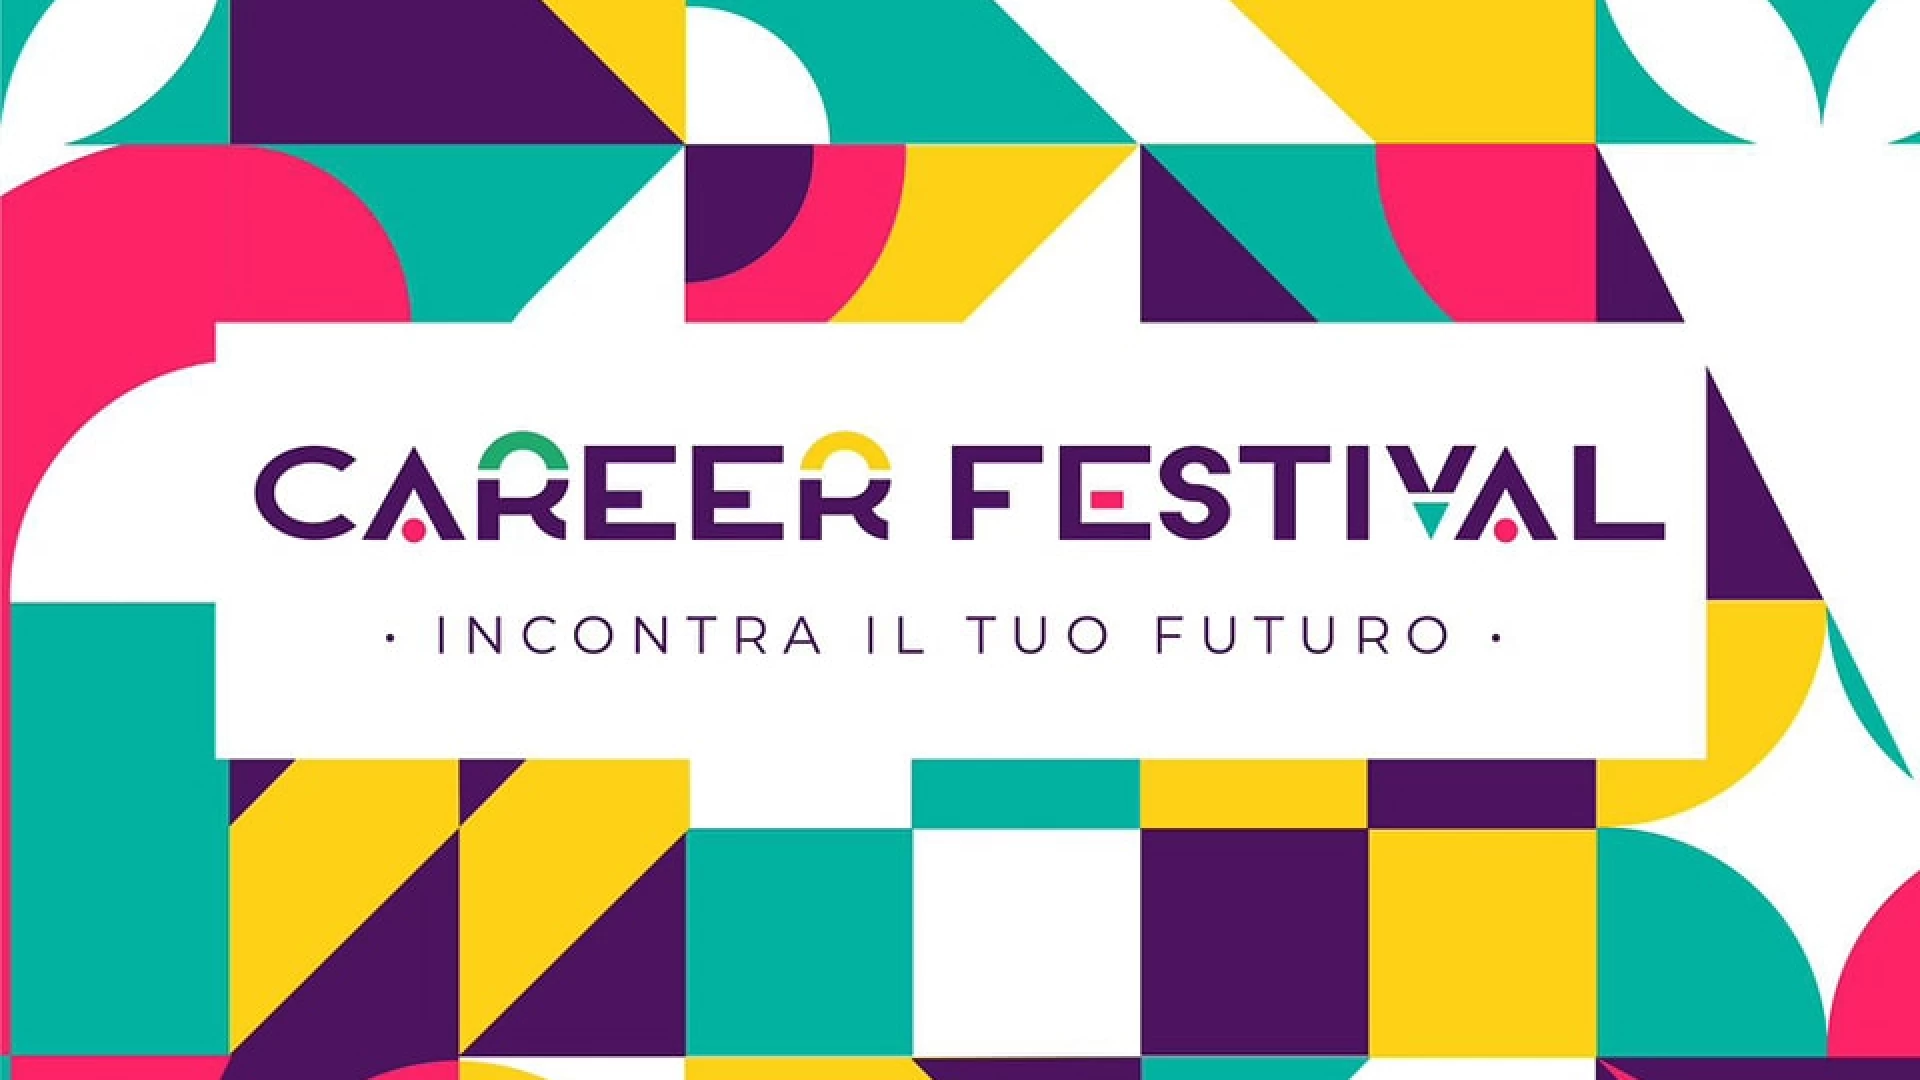 Isernia: al via la prima edizione del “Career Festival”. La nota del comune pentro.